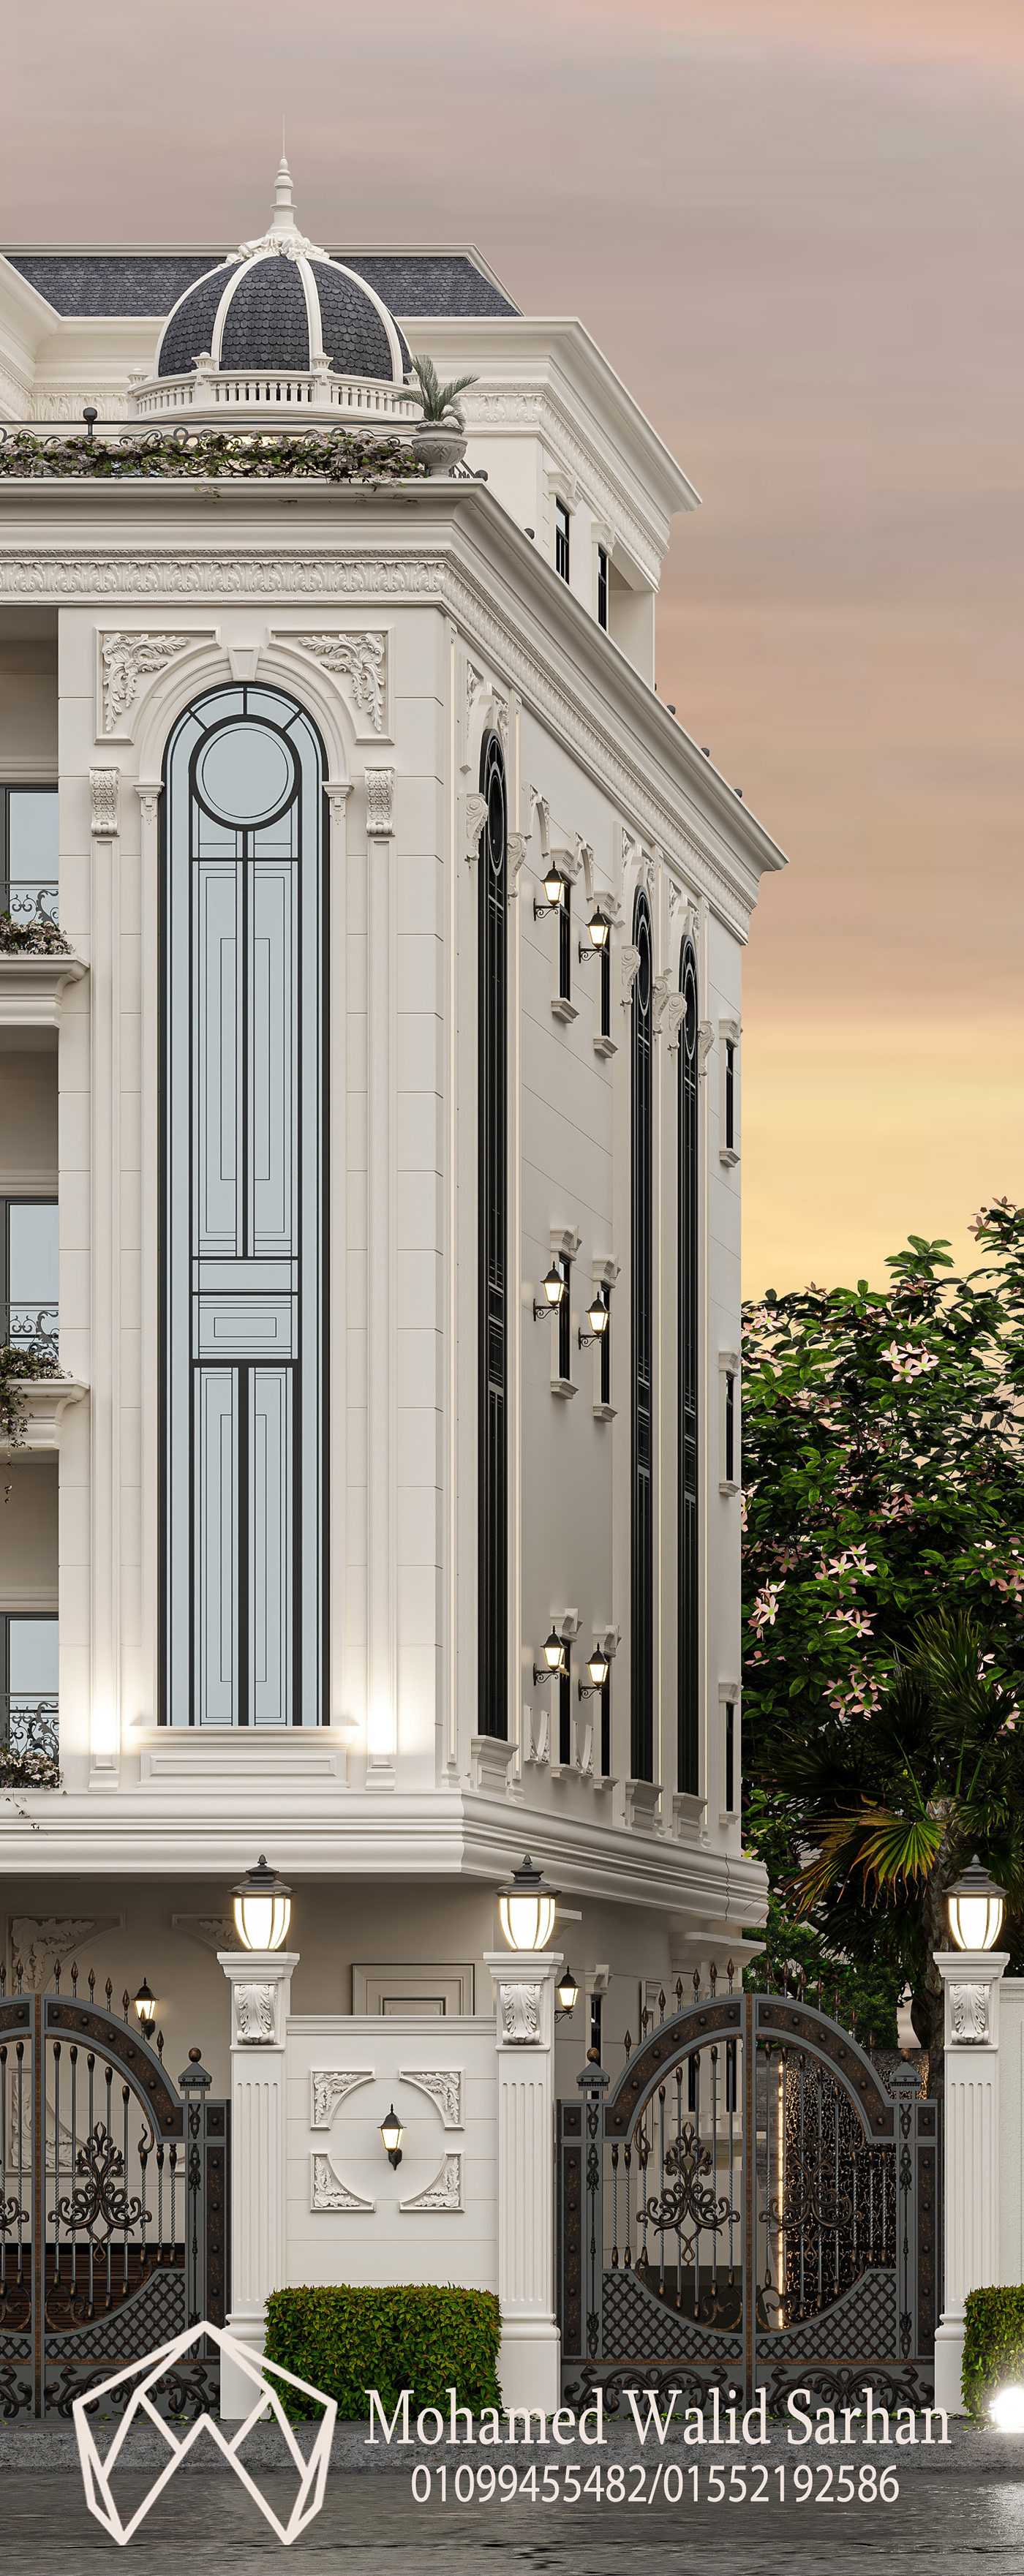 building architecture visualization exterior 3ds max Render corona artwork archviz 3D